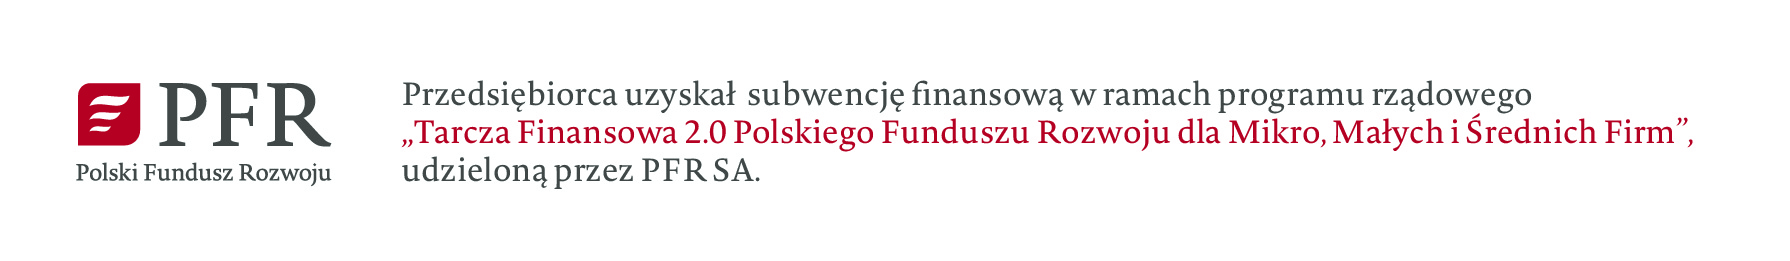 Polski Fundusz Rozwoju - Tarcza Finansowa 2.0